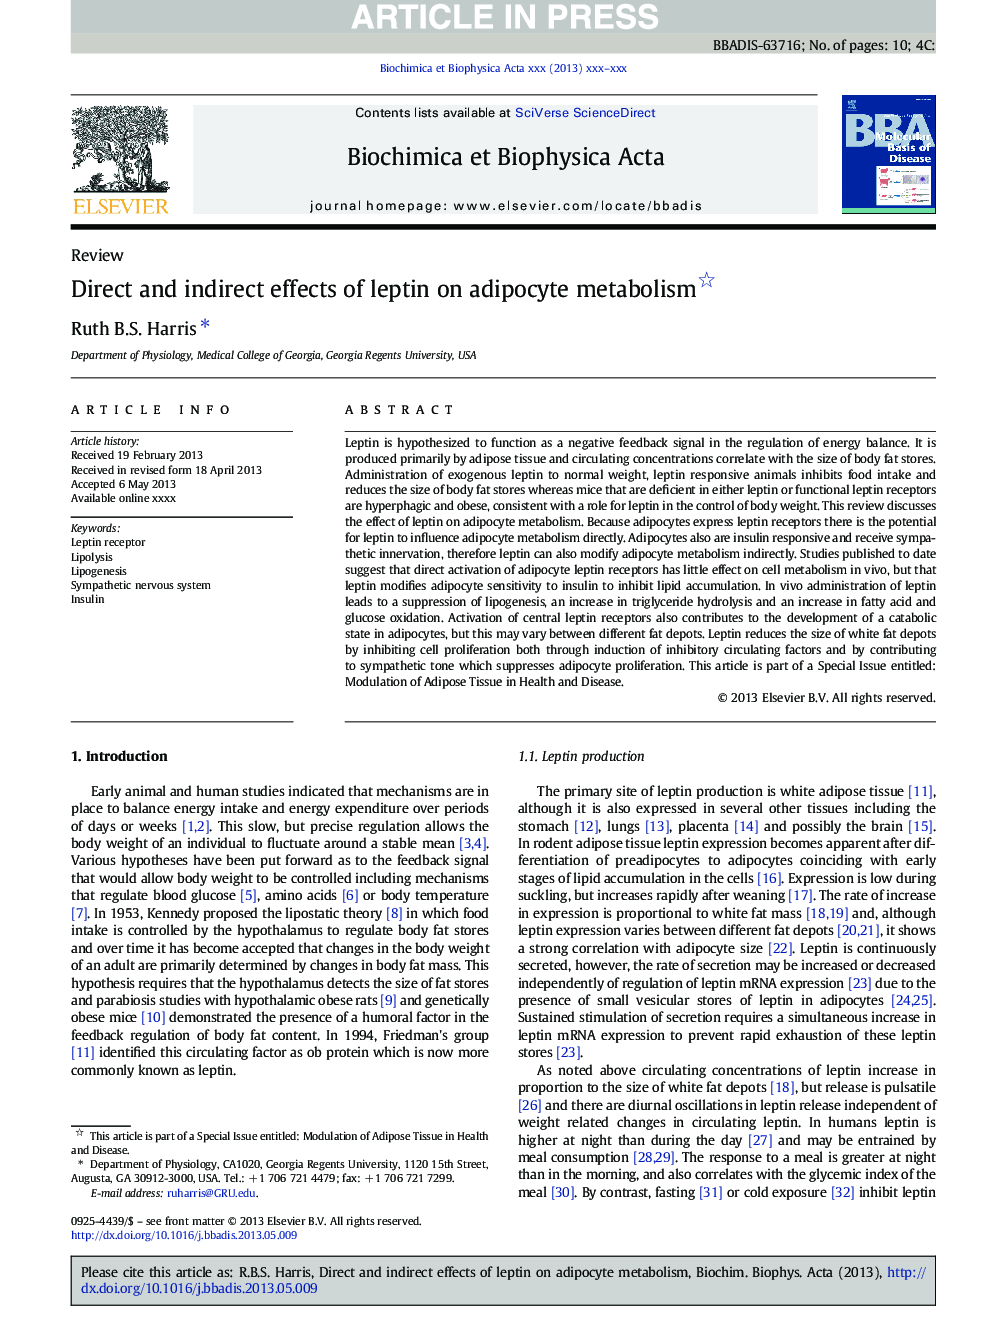 اثرات مستقیم و غیر مستقیم لپتین بر متابولیسم آدیپوسیت 